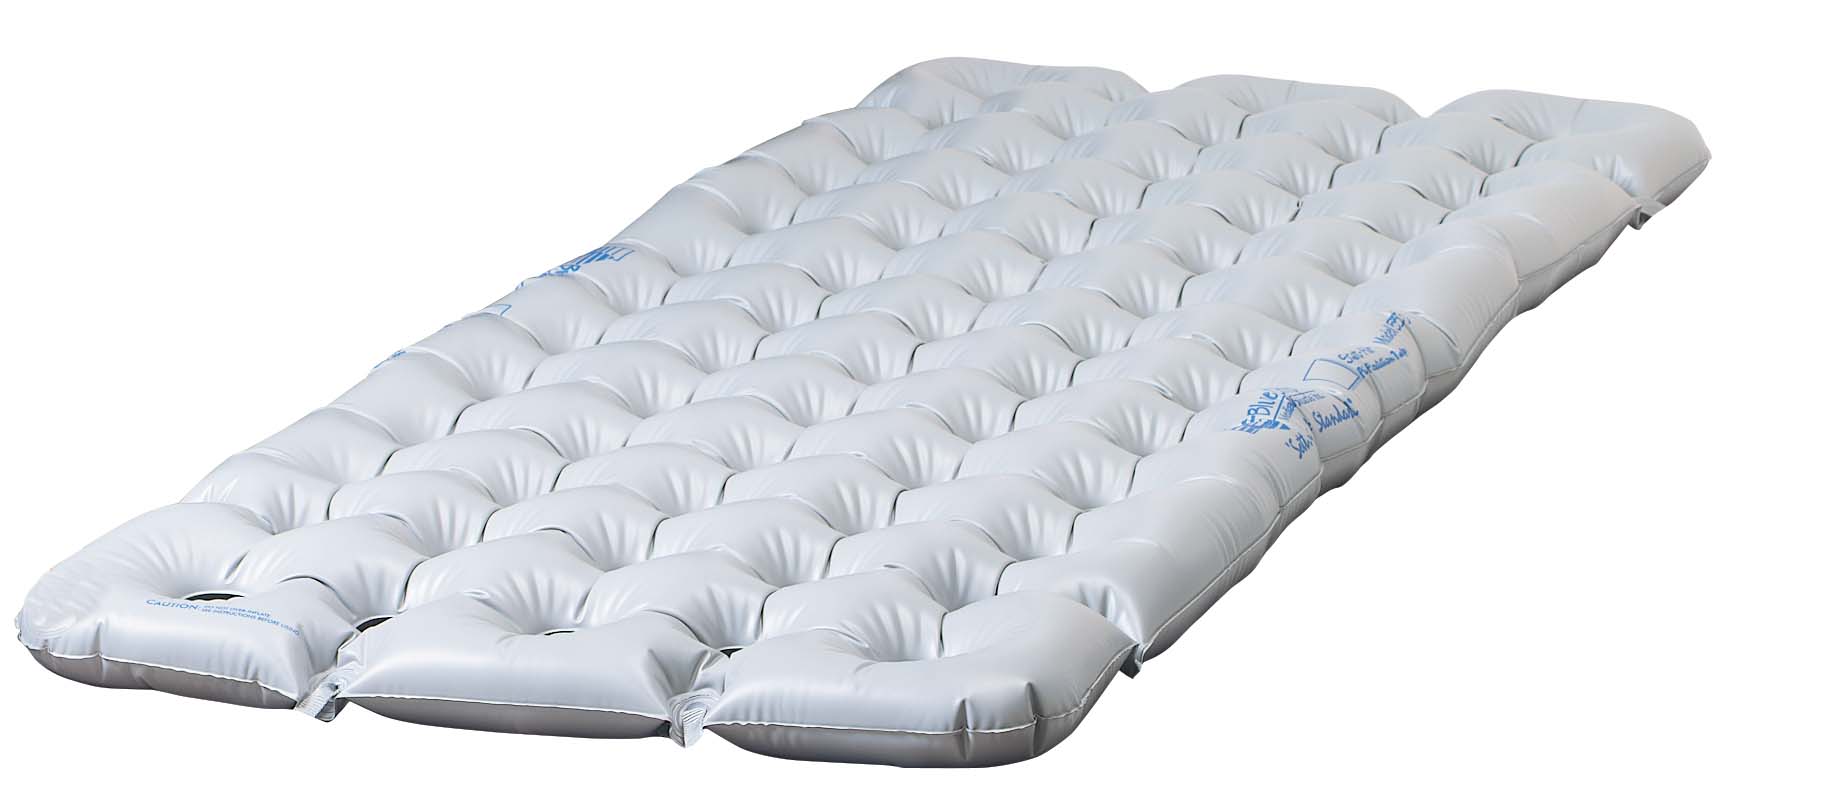 air mattress overlay pads & pumps